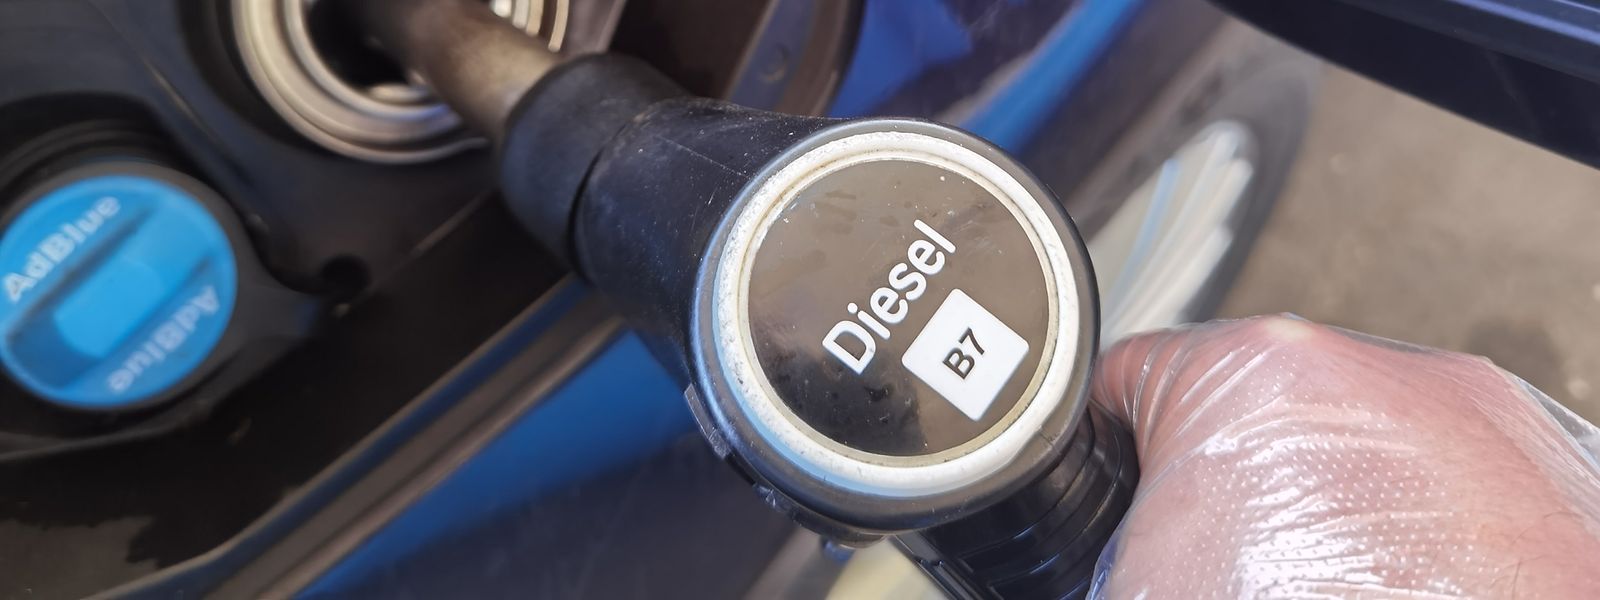 Au 1er septembre, son montant TTC passera à 30 centimes le litre (25 centimes hors taxes) pour les gazoles et essences.